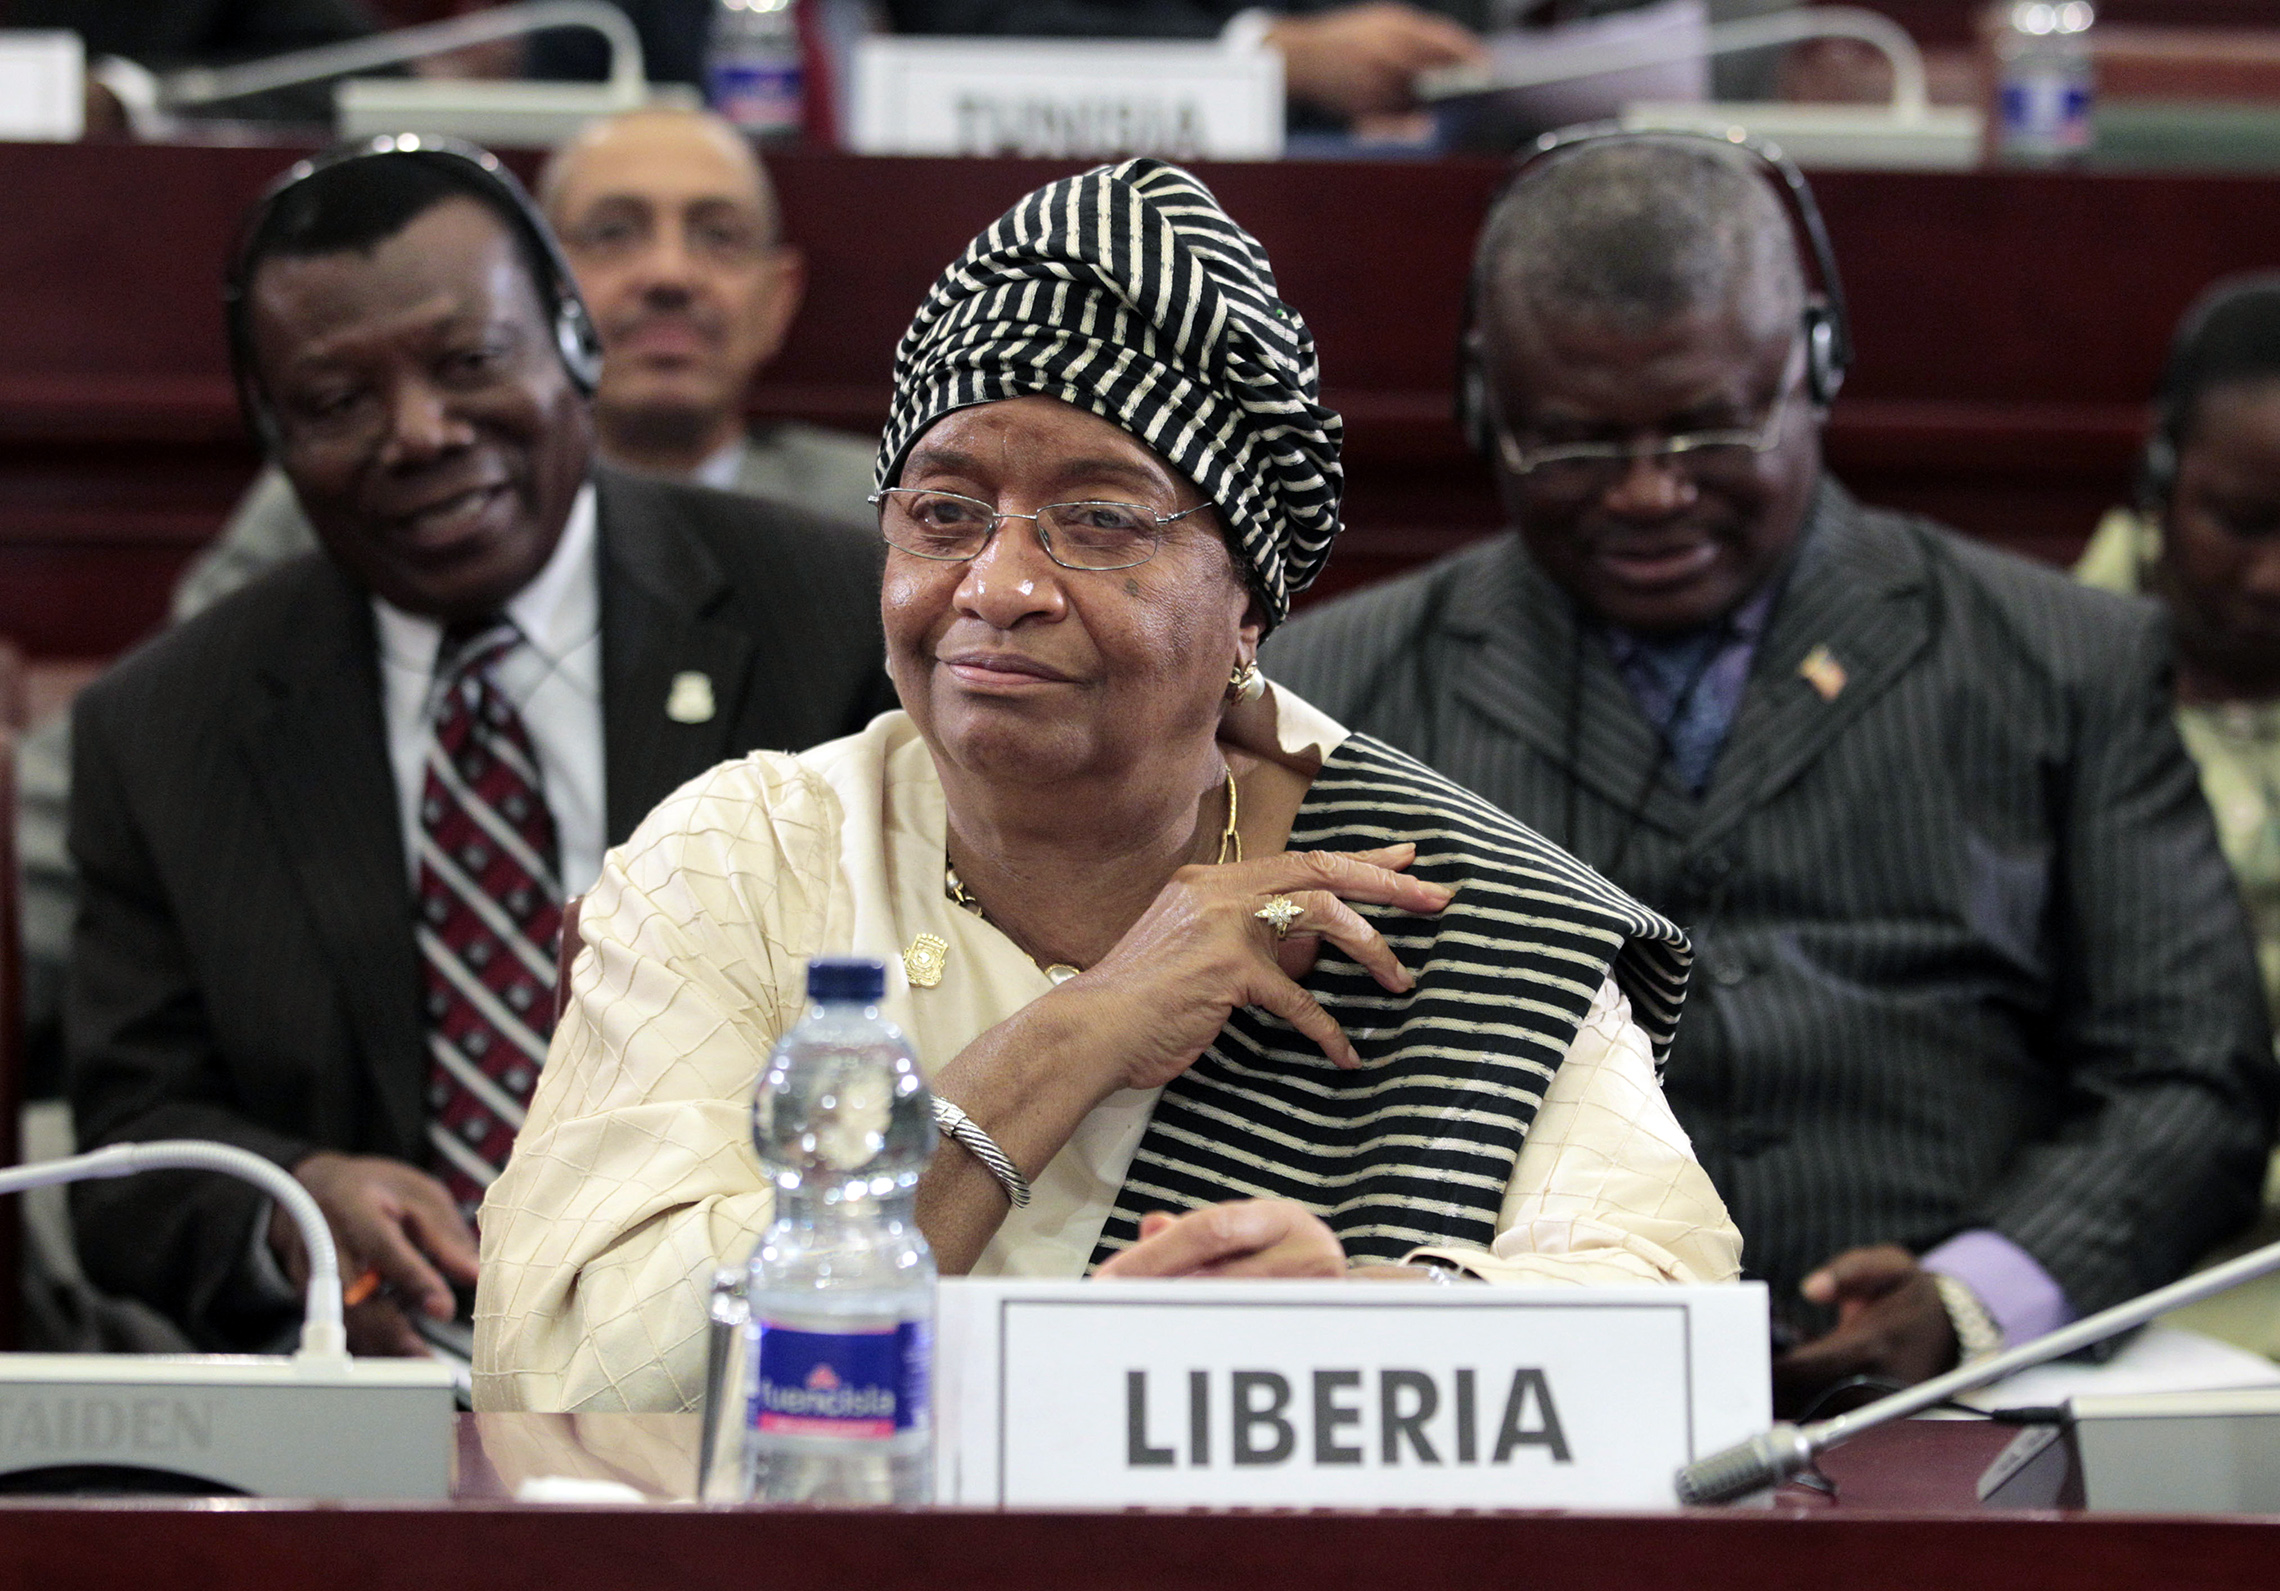 prezydent Liberii Ellen Johnson Sirleaf, widziana podczas sesji zamykającej XVII szczyt Unii Afrykańskiej w Malabo, Gwinea Równikowa, 2011. Dzień sesji zdominowała debata na temat zamieszania w Libii, gdzie moammar Kadafi trzymał się niepewnie władzy w obliczu powszechnego powstania przeciwko jego 42-letniemu rządowi. (AP Images/Rebecca Blackwell)'s session was dominated by debate over the turmoil in Libya, where Moammar Gadhafi clung precariously to power in the face of a popular uprising against his 42-year rule. (AP Images/Rebecca Blackwell)